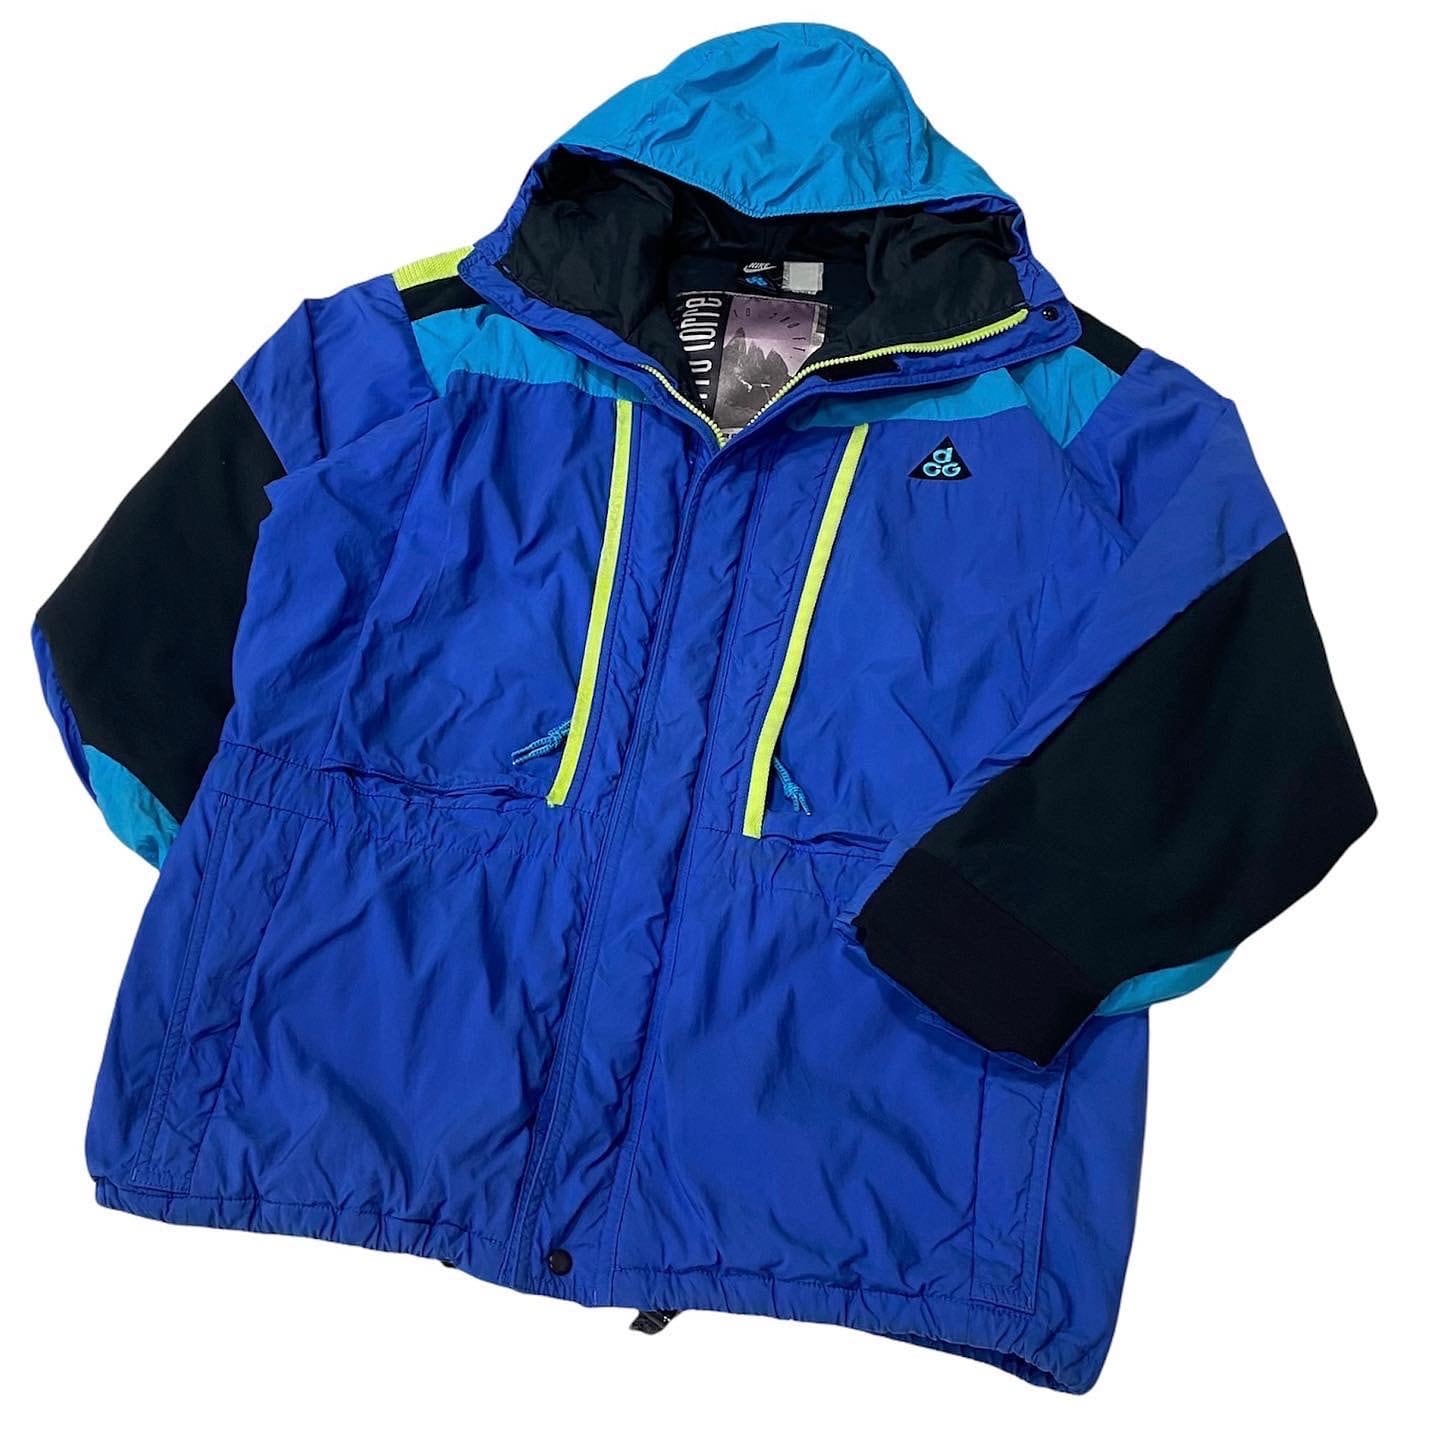 “ 名山シリーズ” 90's NIKE ACG / “Cerro Torre” Nylon Jacket